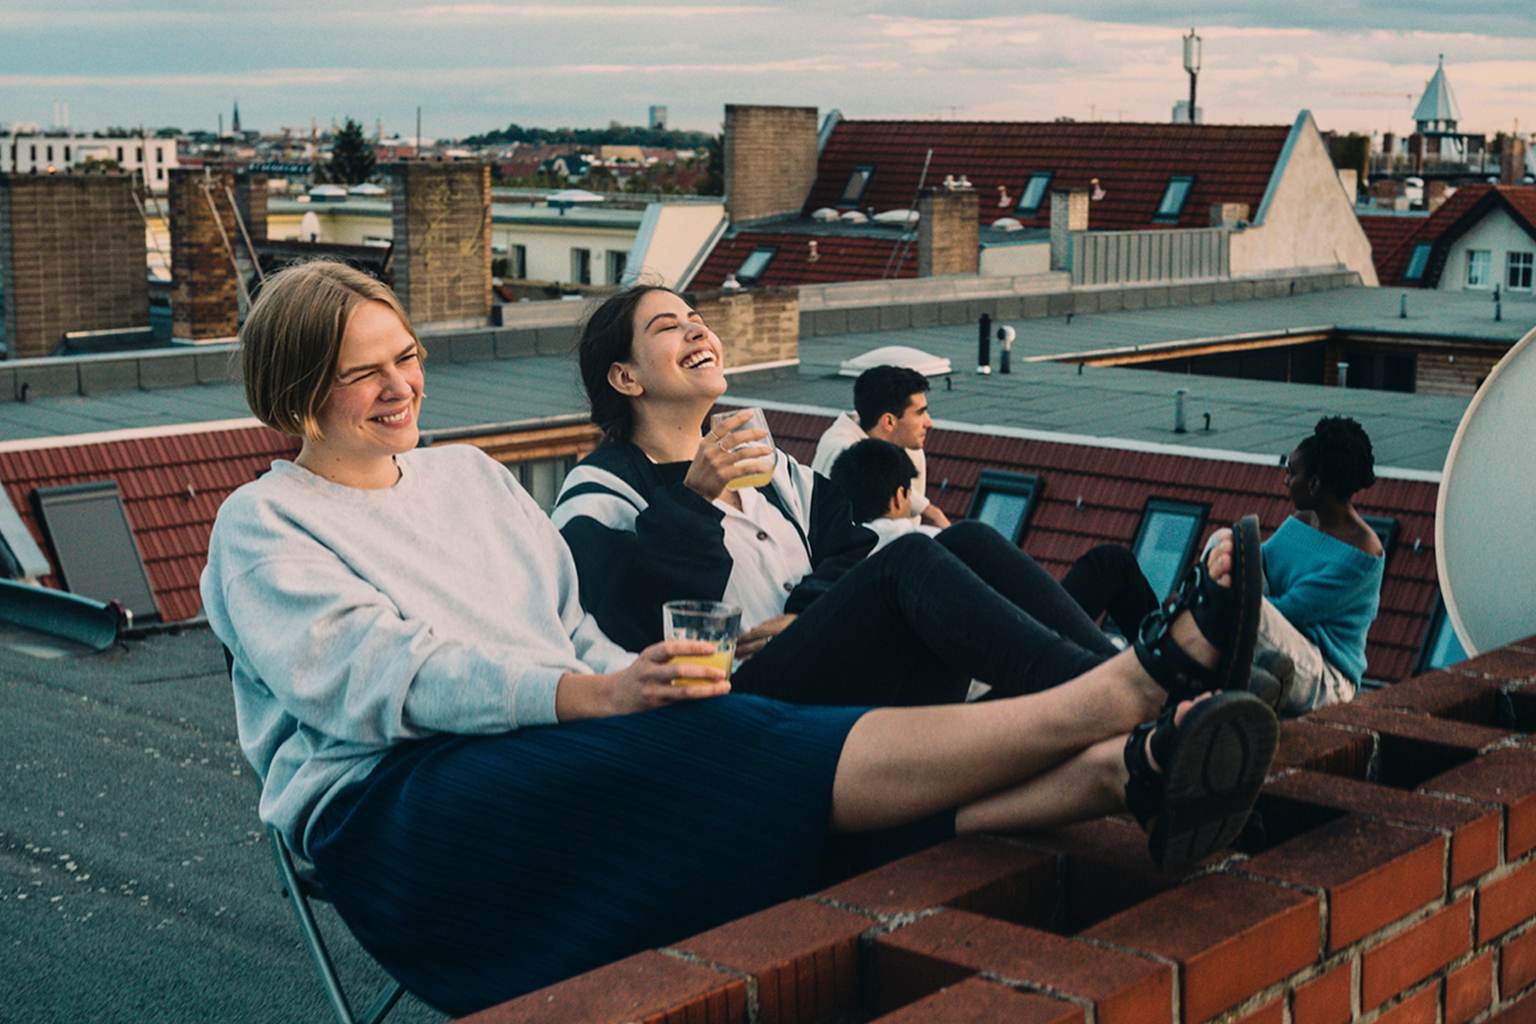 Zwei Frauen sitzen lachend auf einem Flachdach. Sie halten beide ein Getränk in der Hand. Im Hintergrund sitzen drei weitere Personen.